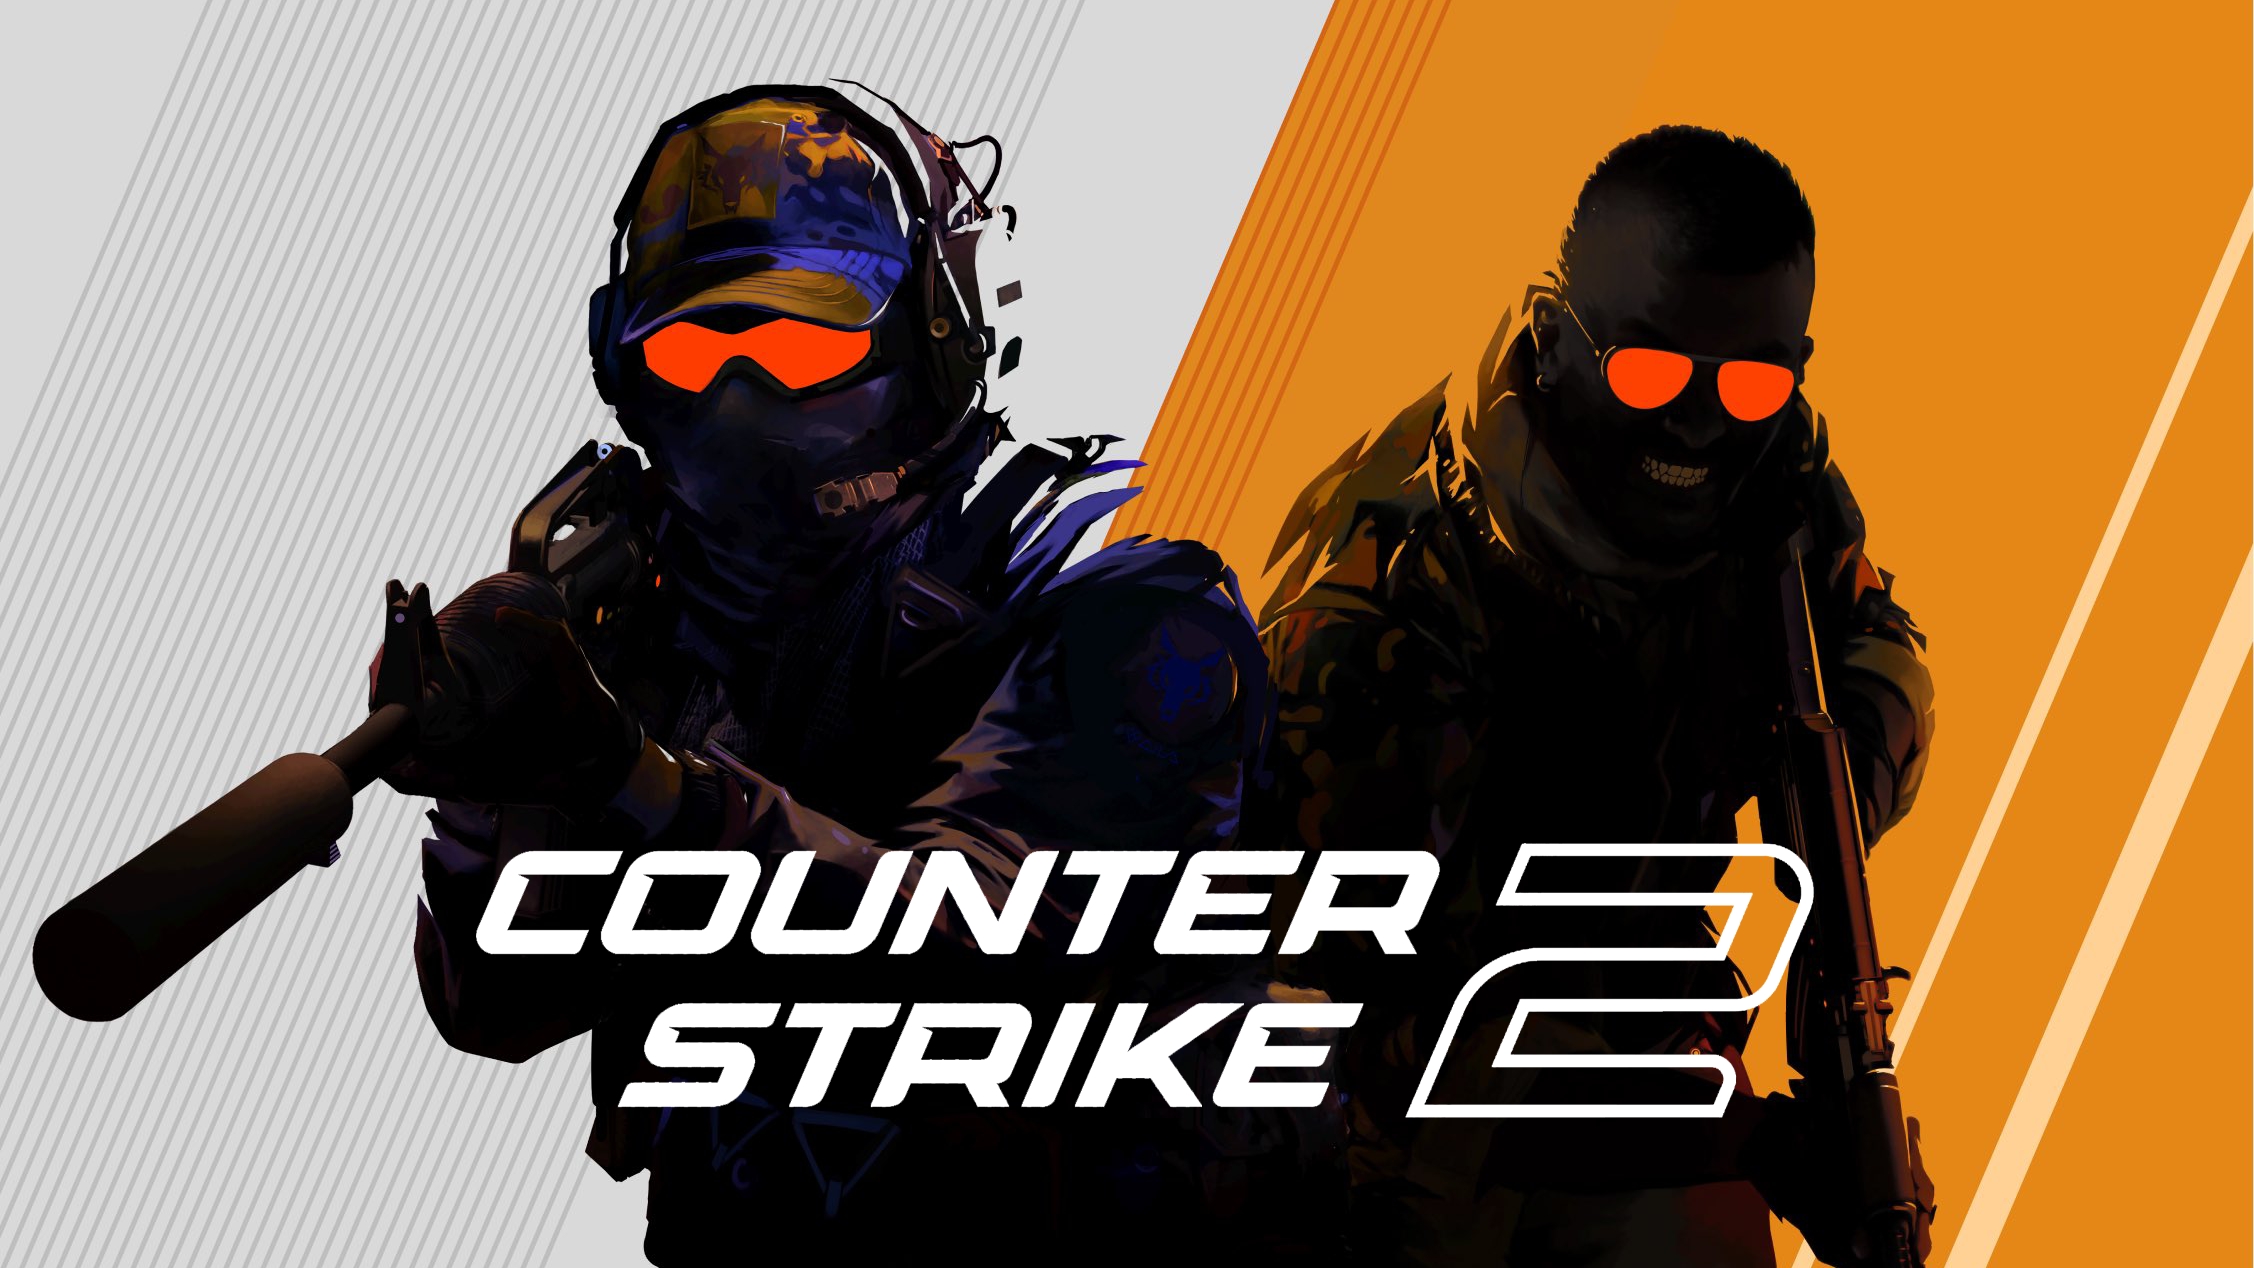 Download Counter Strike 2 Steam